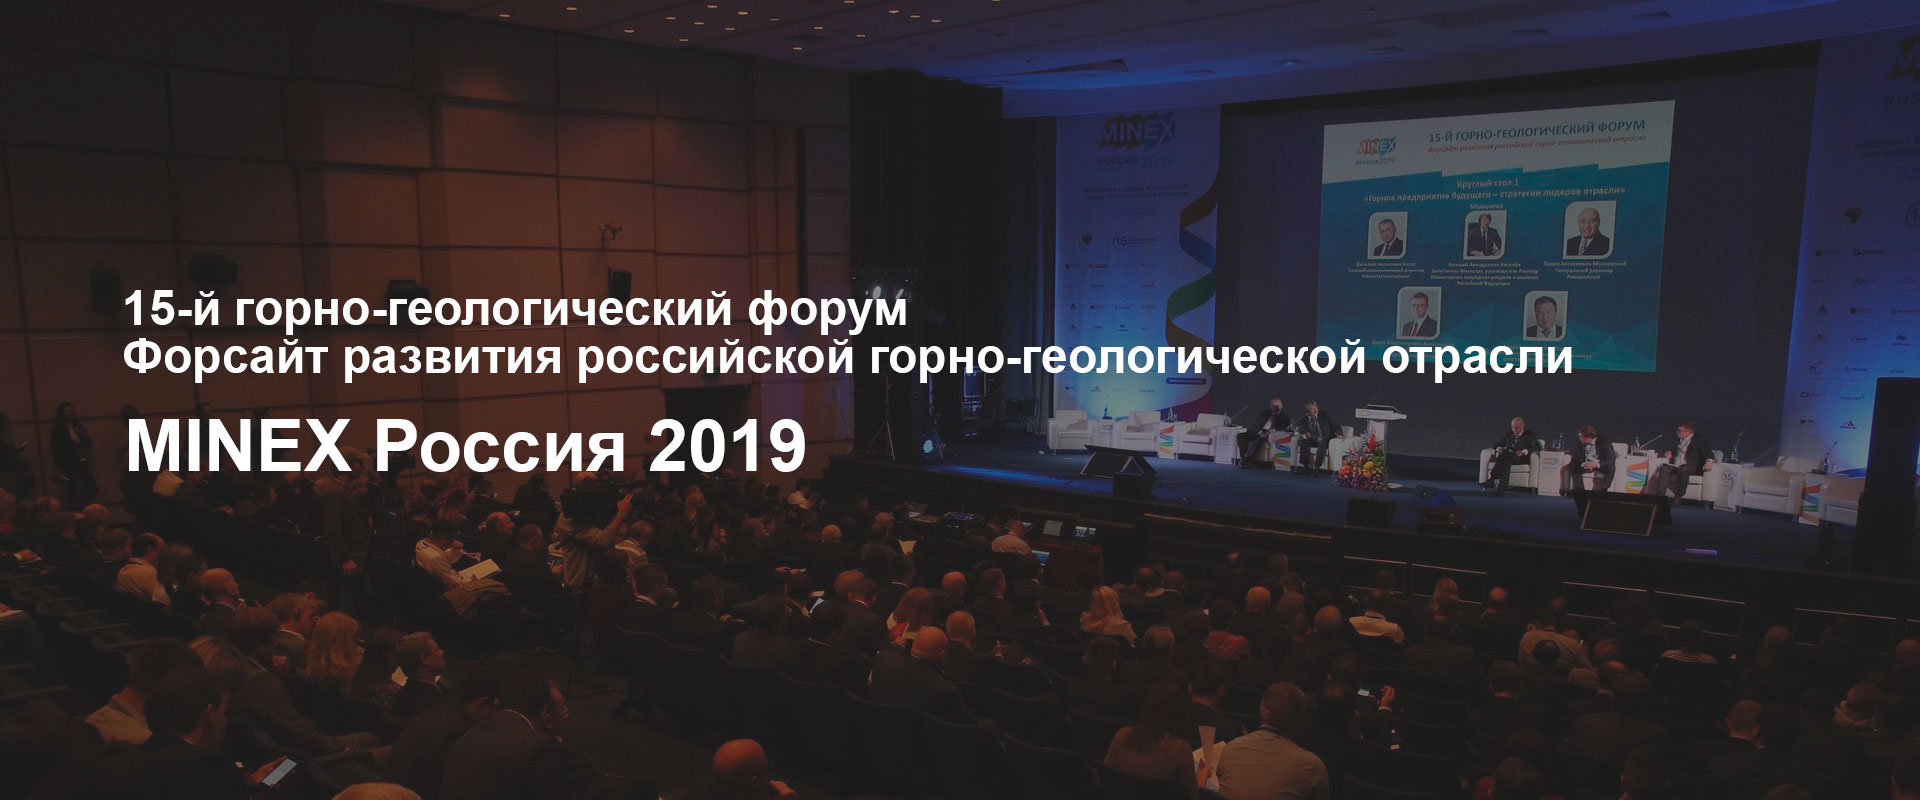 Горно-геологический форум Minex Россия 2019